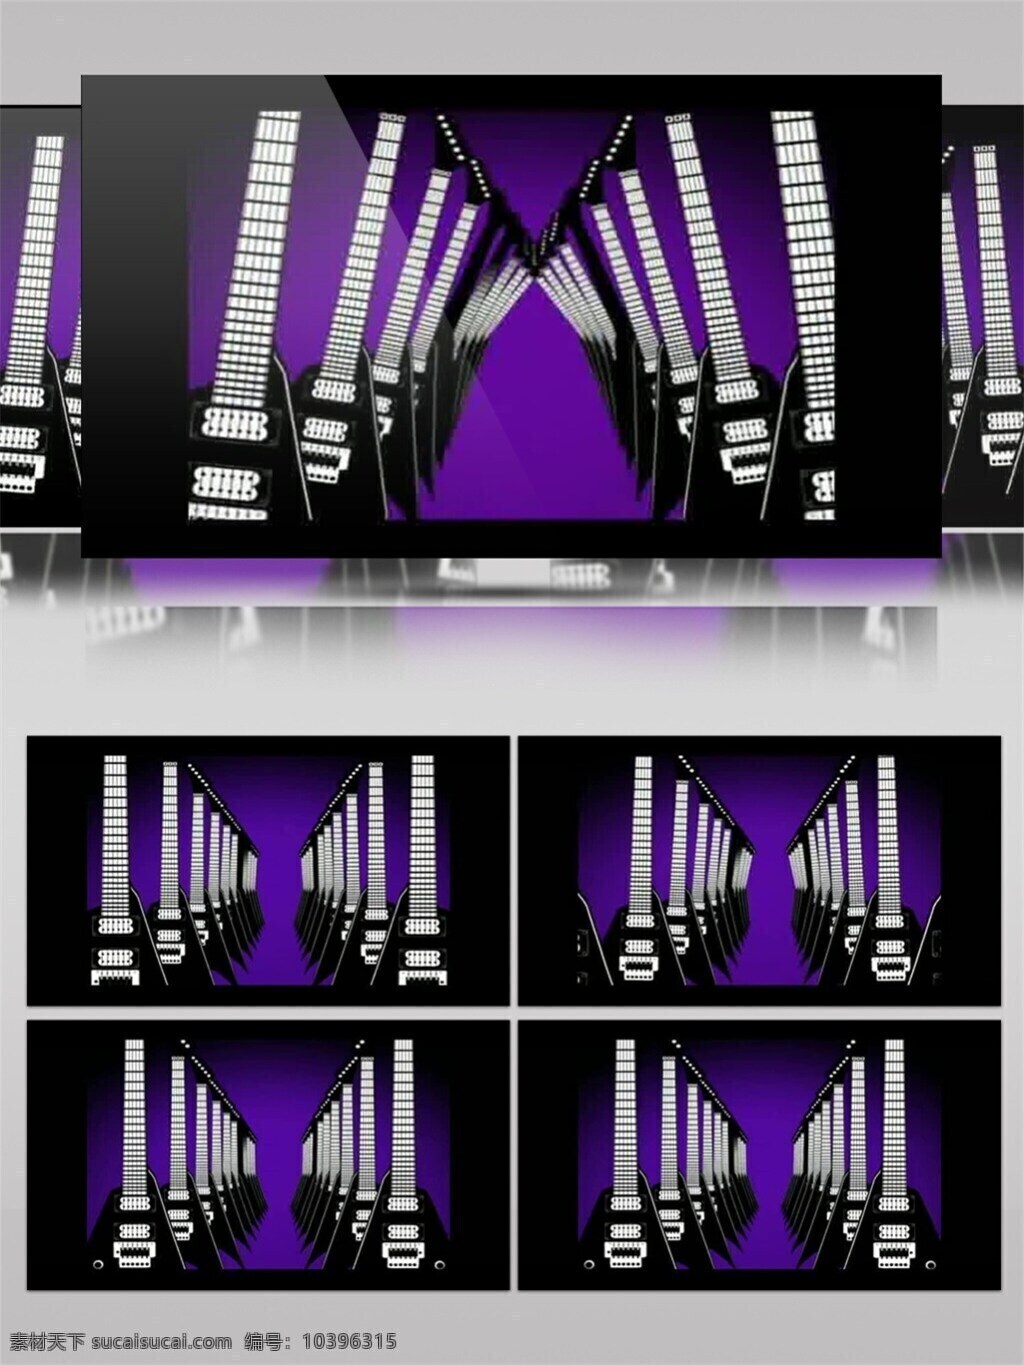 紫色 光束 殿堂 高清 视频 光斑散射 光线 视觉享受 手机壁纸